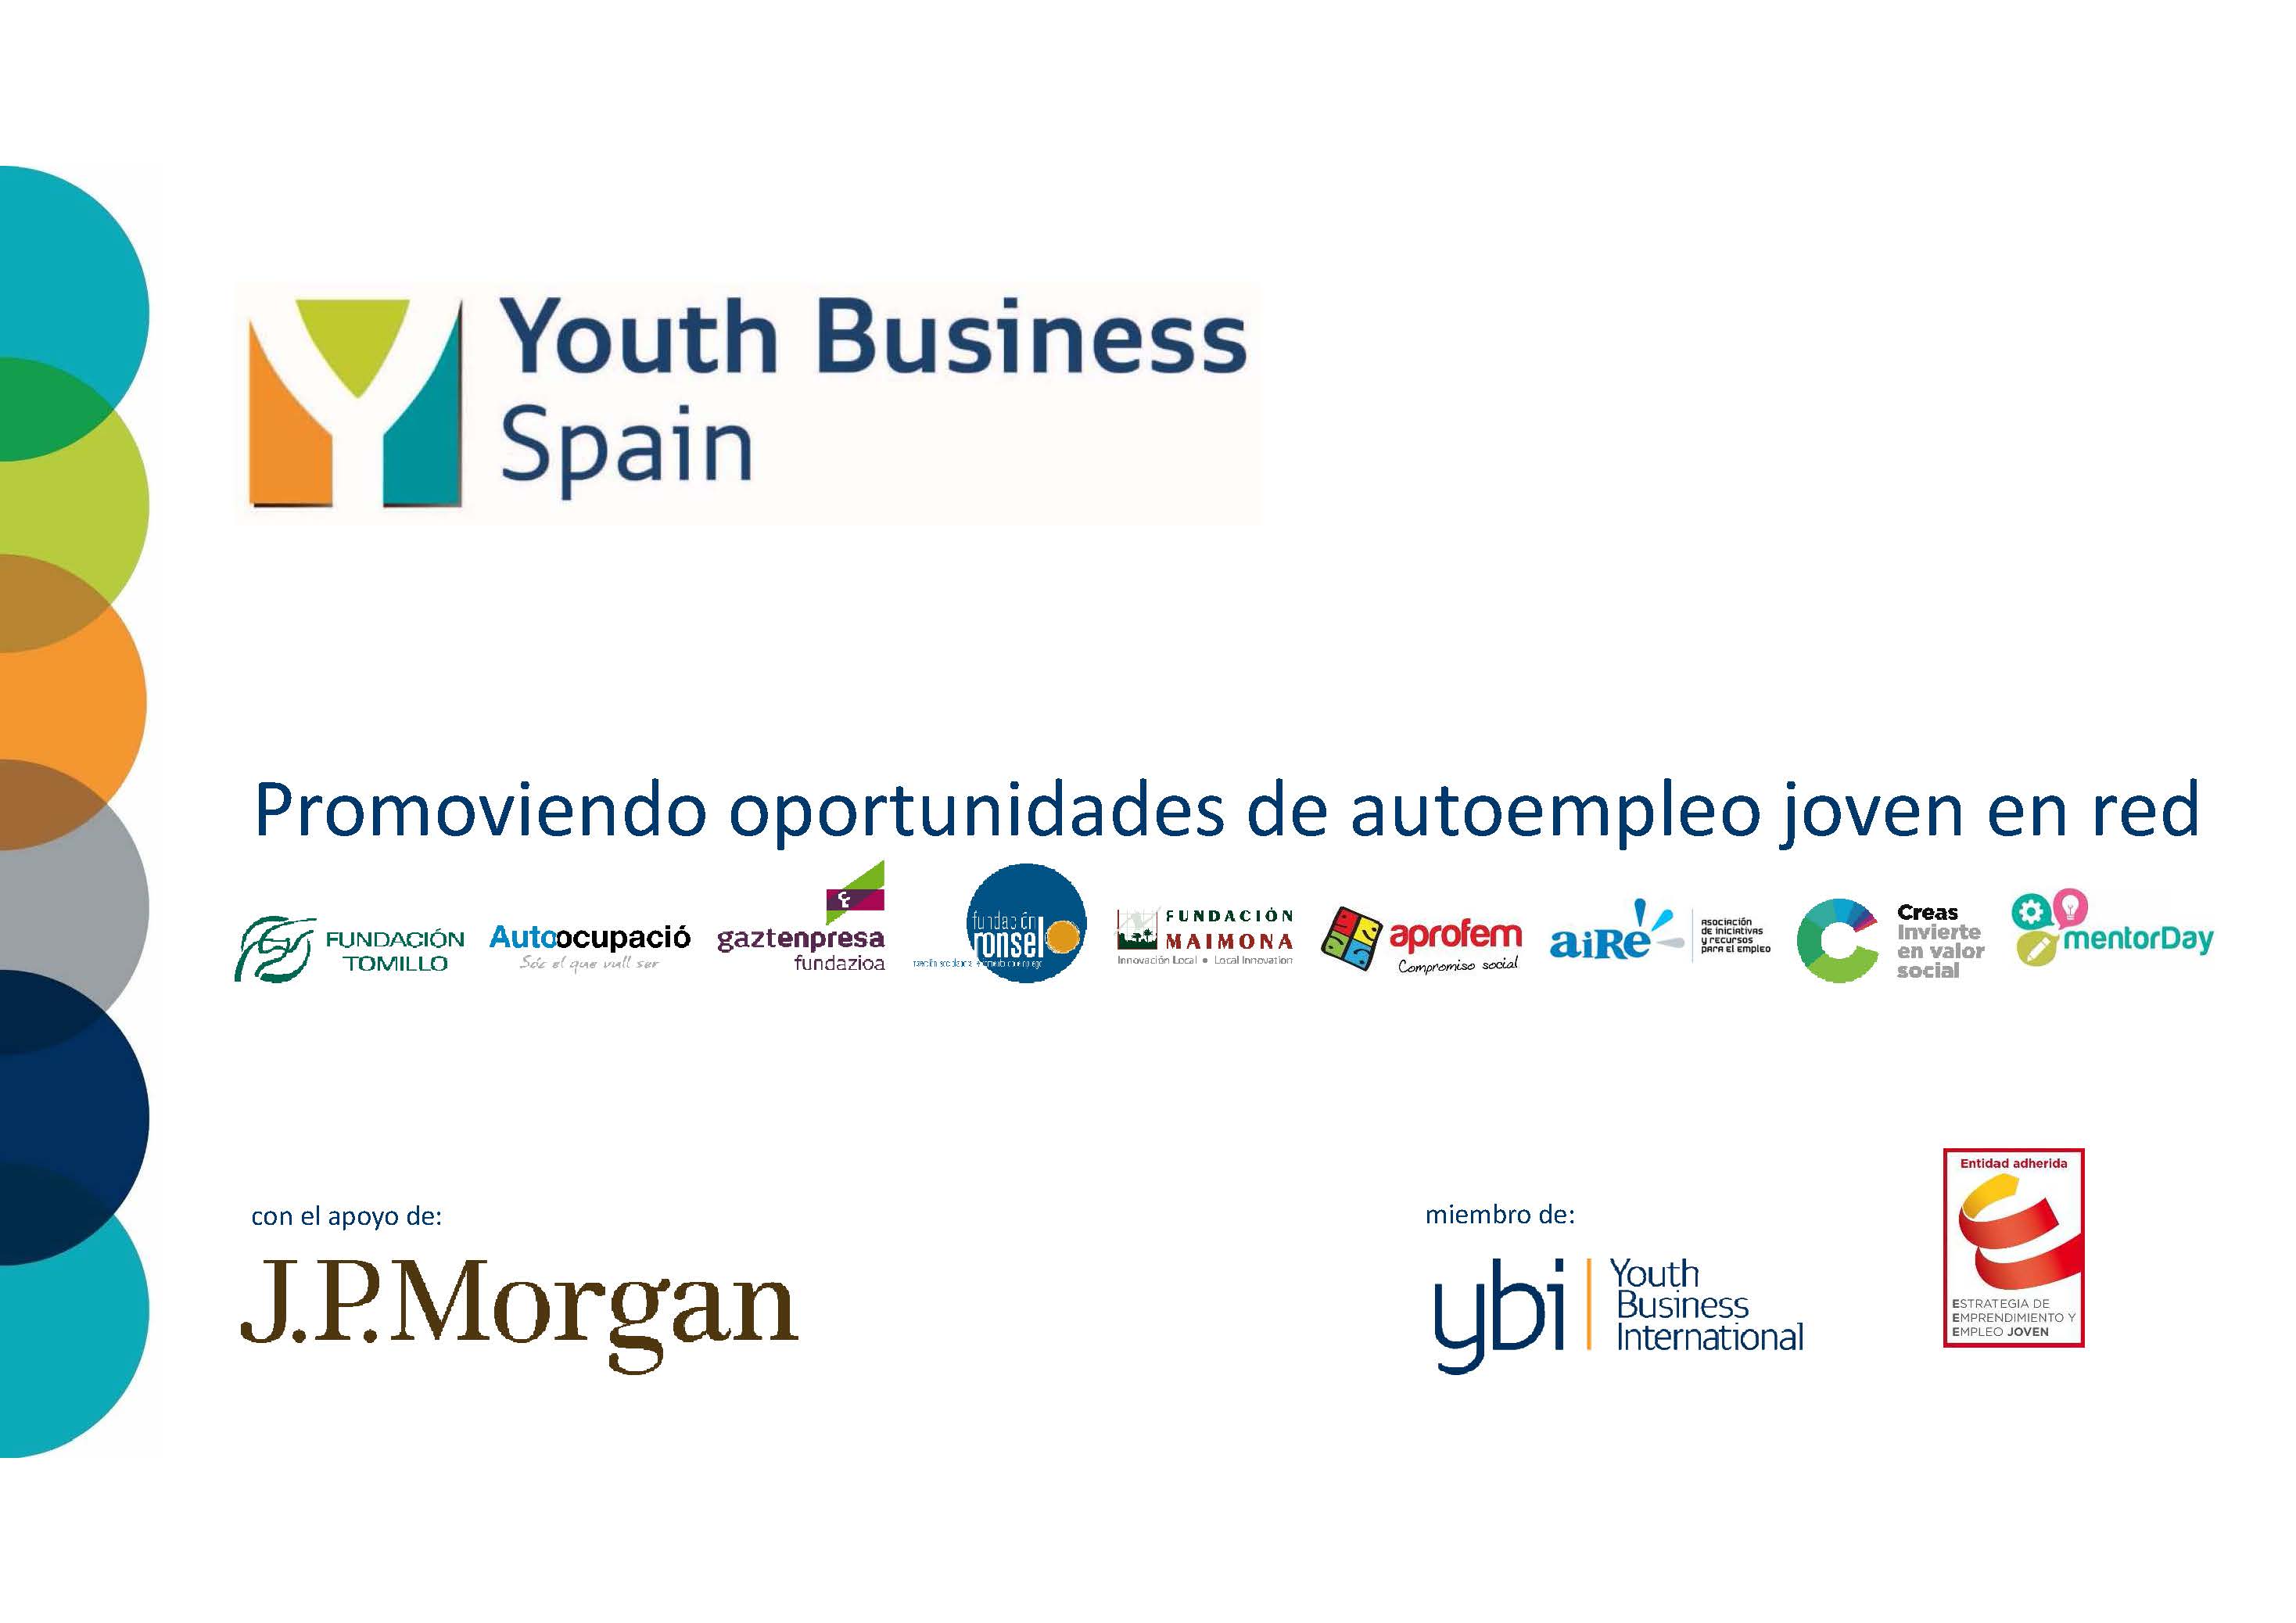 Youth Business Spain – Promoviendo oportunidades de autoempleo joven en red